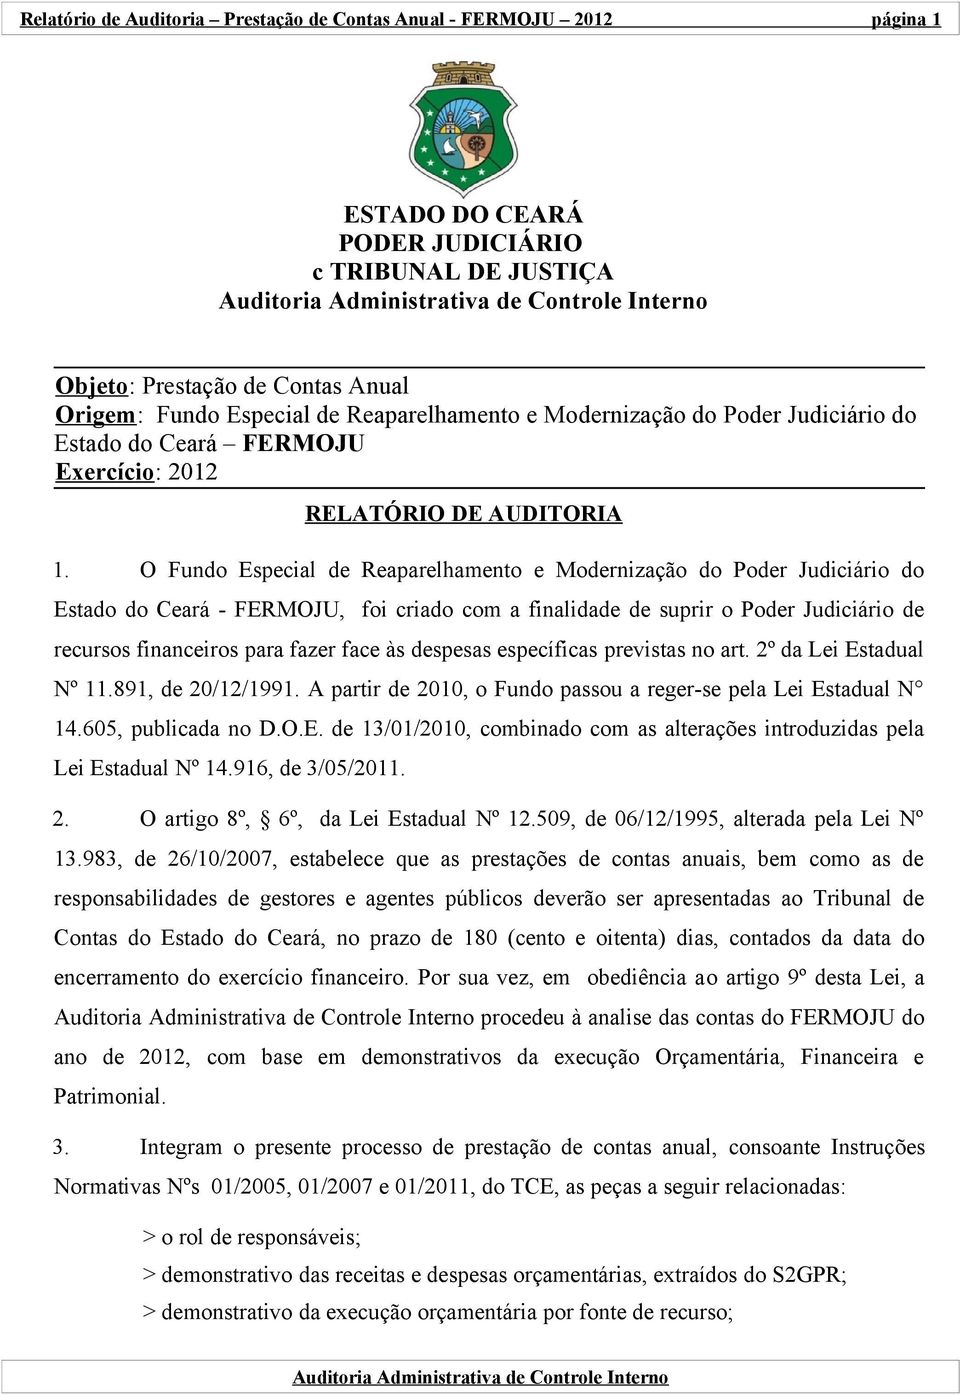 O Fundo Especial de Reaparelhamento e Modernização do Poder Judiciário do Estado do Ceará - FERMOJU, foi criado com a finalidade de suprir o Poder Judiciário de recursos financeiros para fazer face